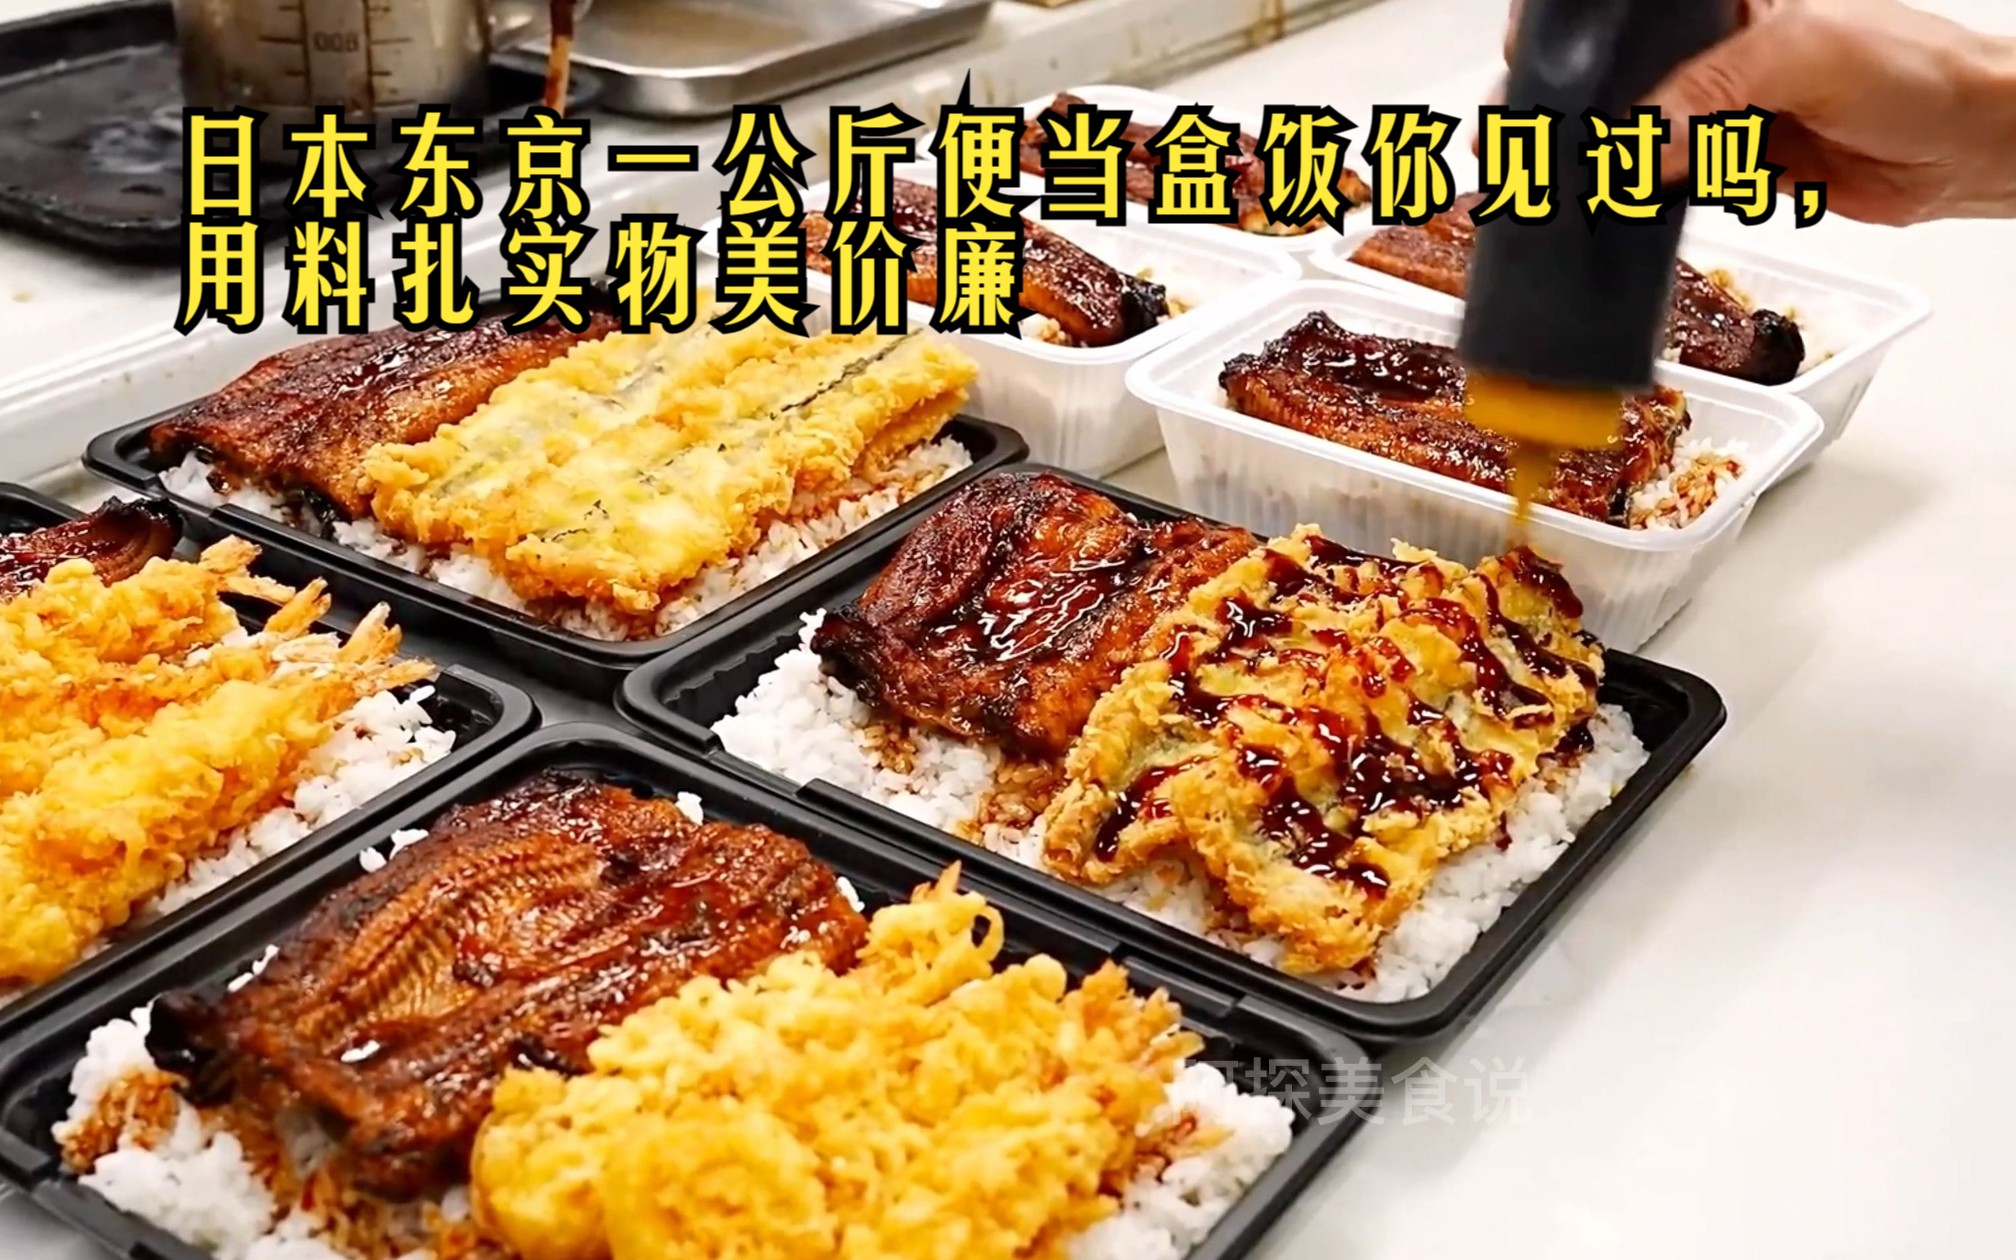 来自日本东京的一公斤便当盒饭你见过吗，用料扎实物美价廉